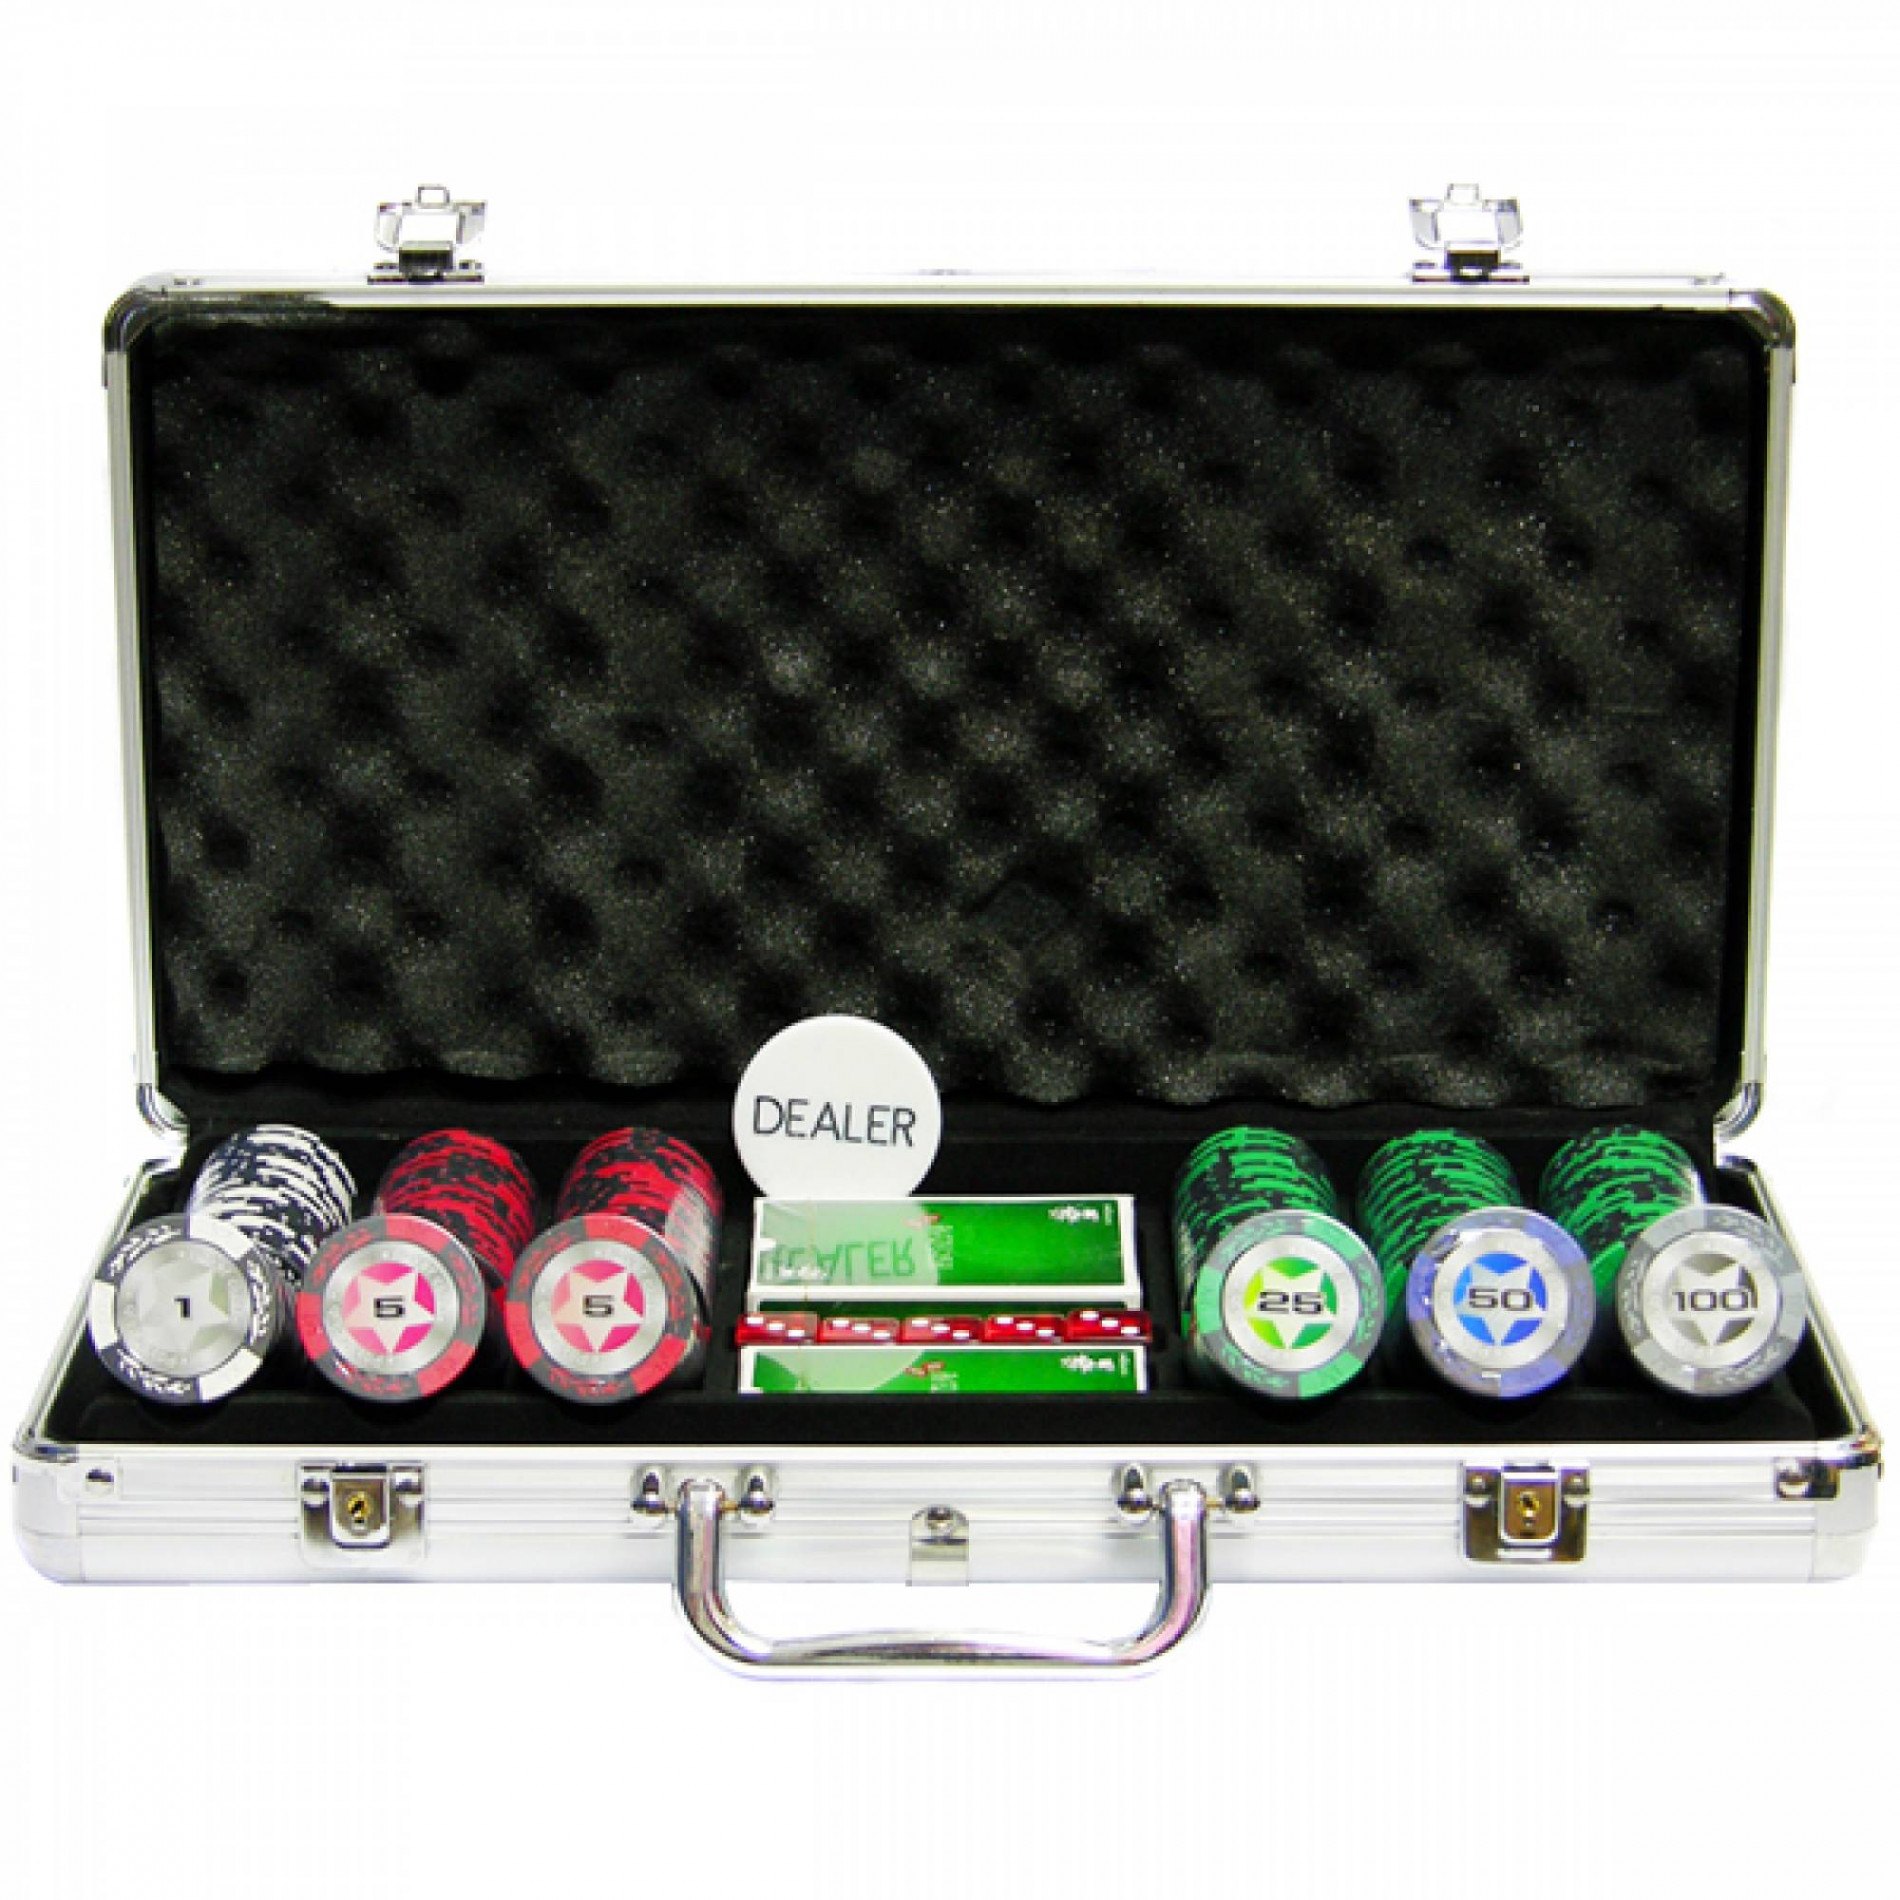 Профессиональный набор для игры в покер STARS 300 на 300 фишек премиум класса